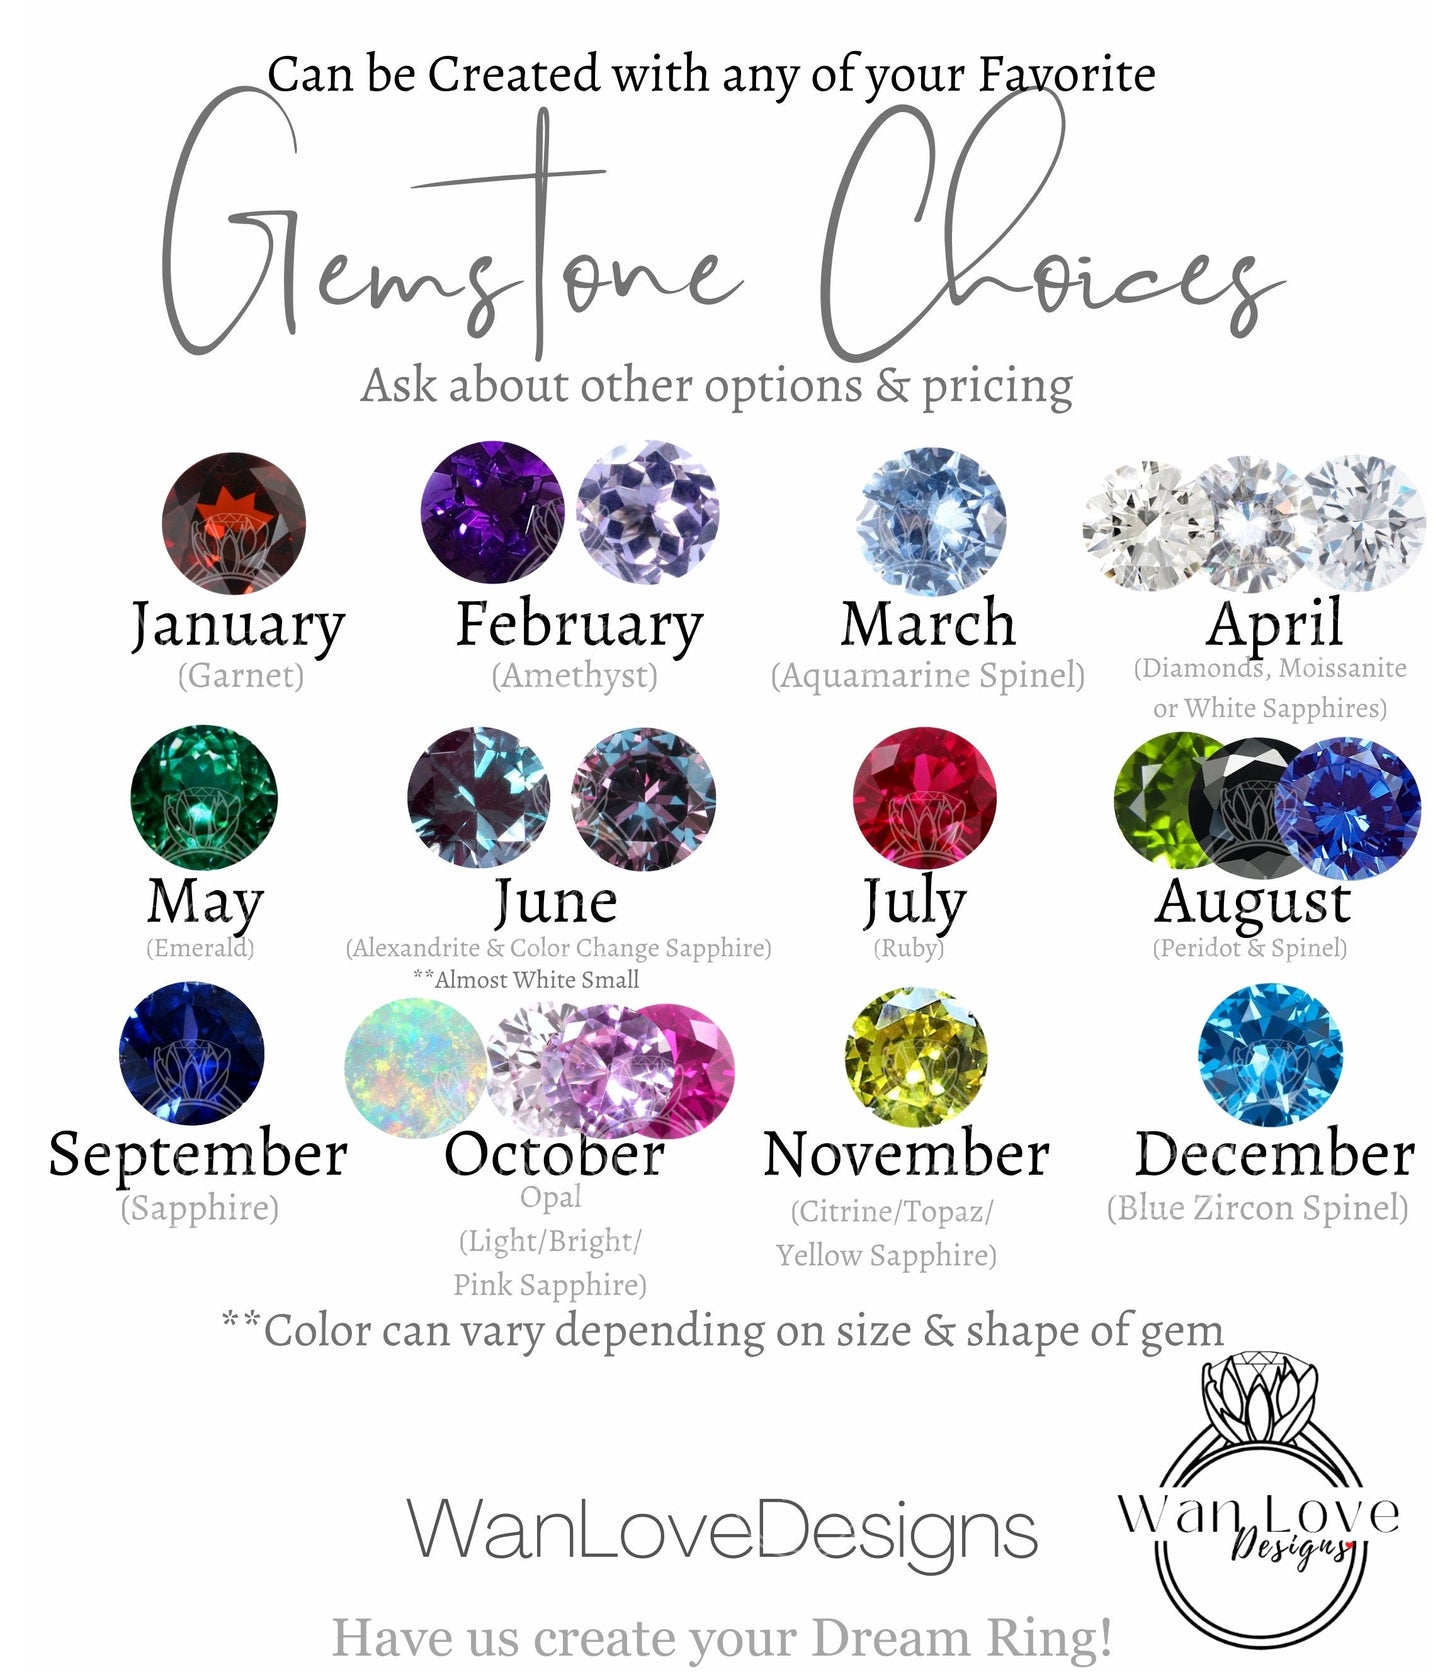 2ct Pear Diamond Halo Earrings • Dainty Pear Moissanite Stud Earrings • Perfect Wedding Earrings • Minimalist Earrings • Gift for Her Wan Love Designs